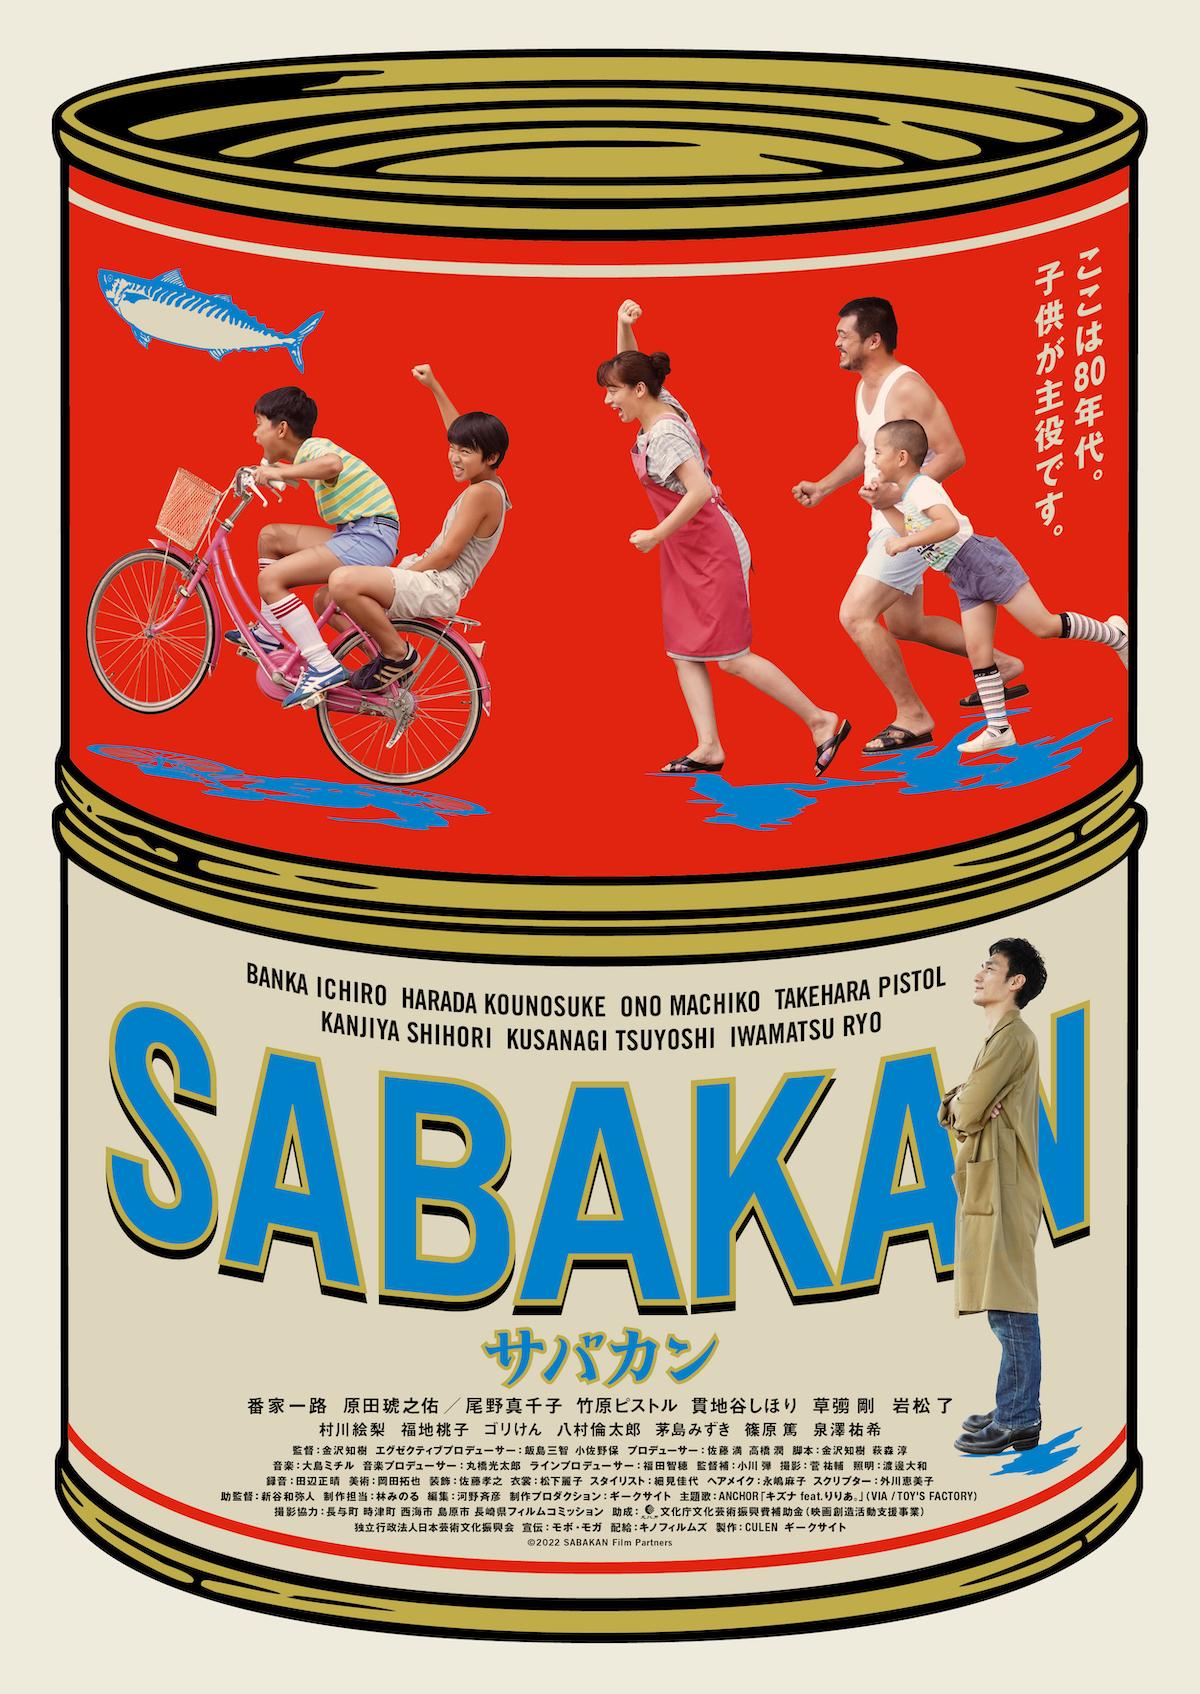 映画『サバカン SABAKAN』キービジュアル